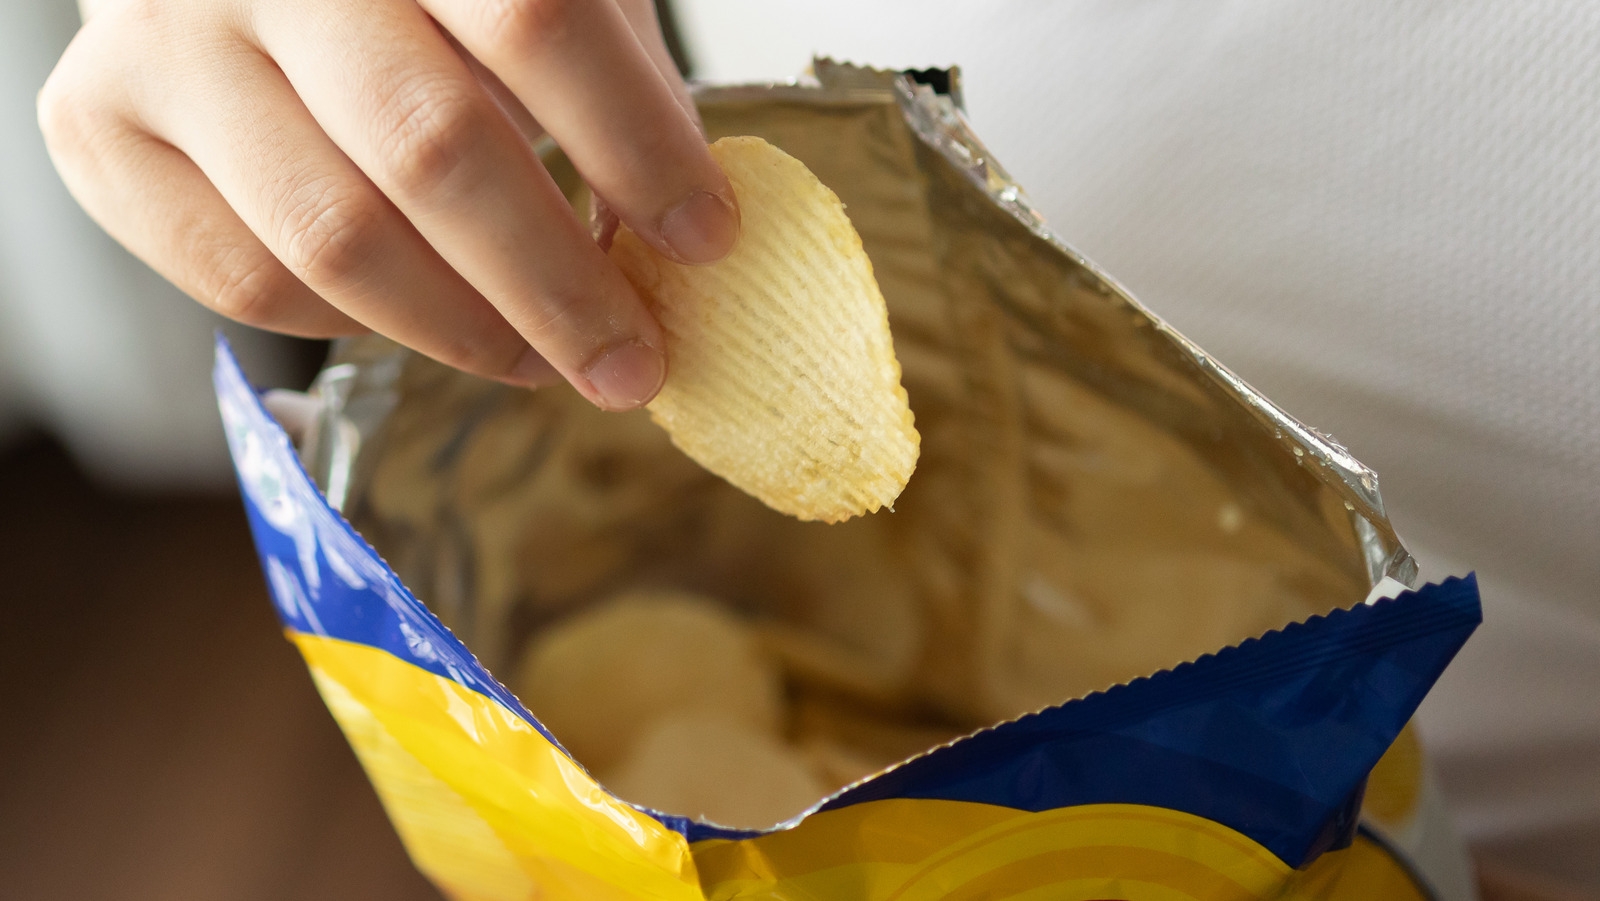 Balenciaga Is Selling A Lay's Potato Chip Handbag For $1,800